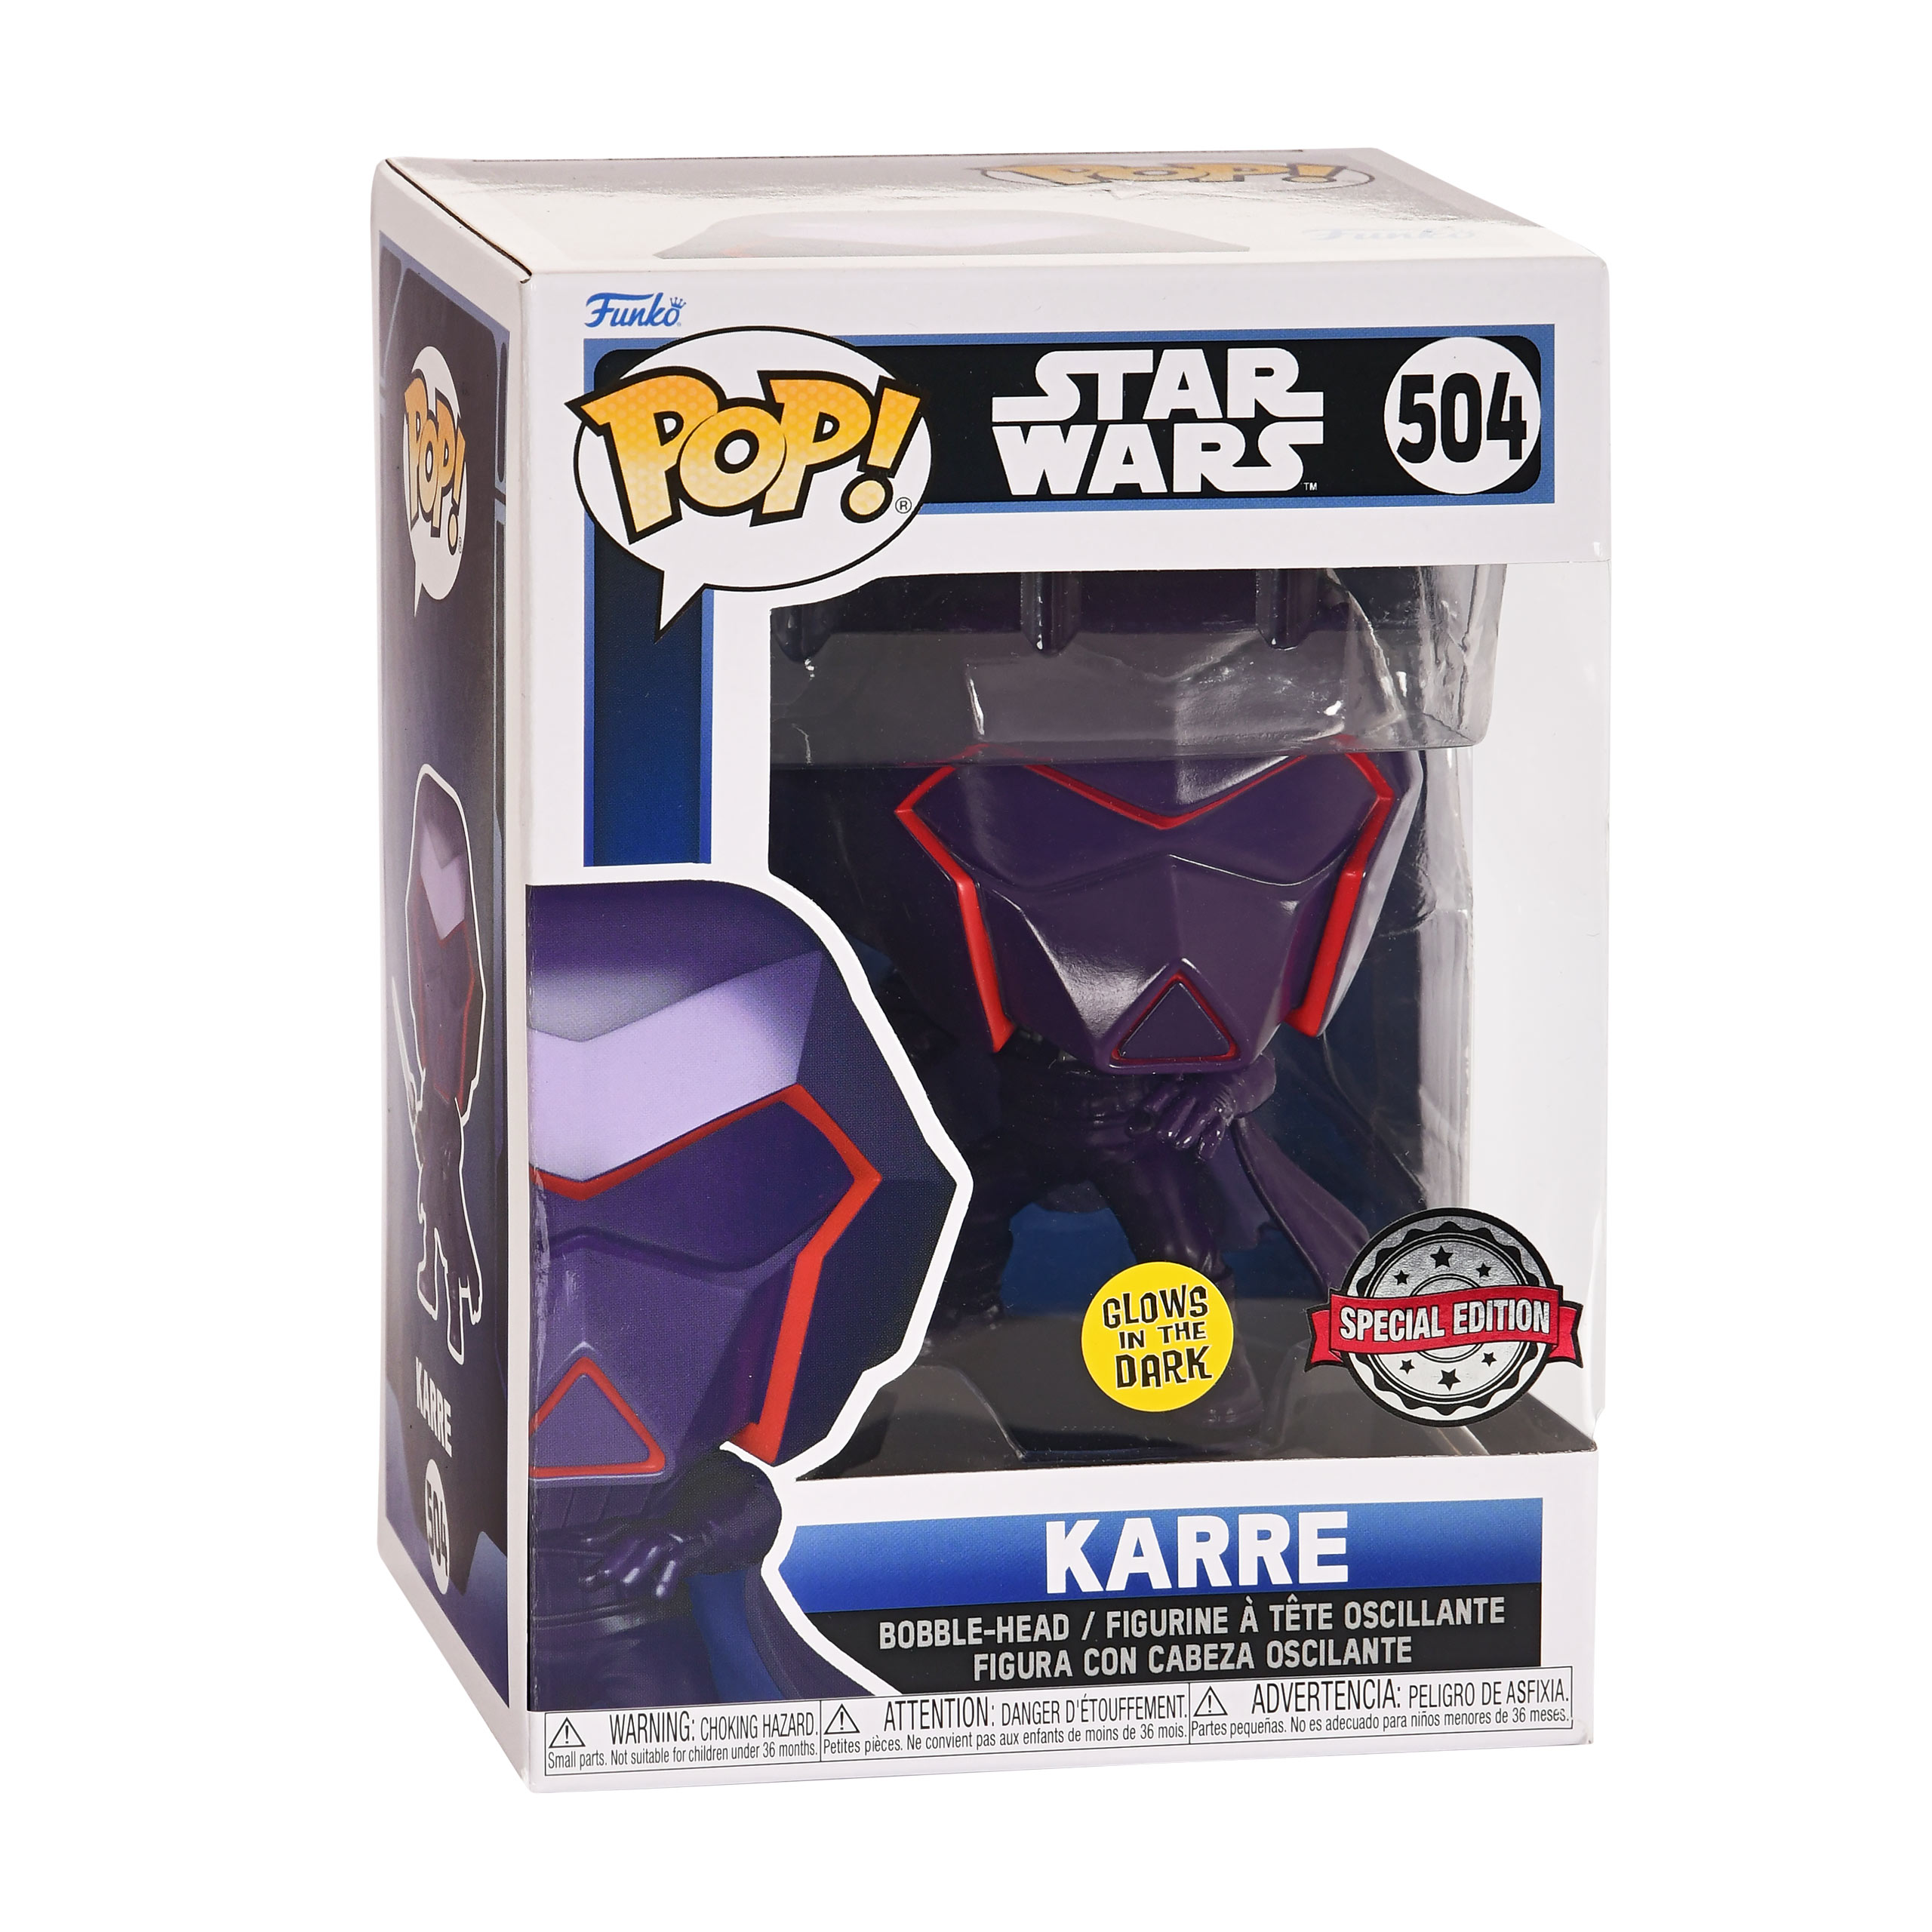 Star Wars - Karre Glow in the Dark Funko Pop Bobblehead Figure